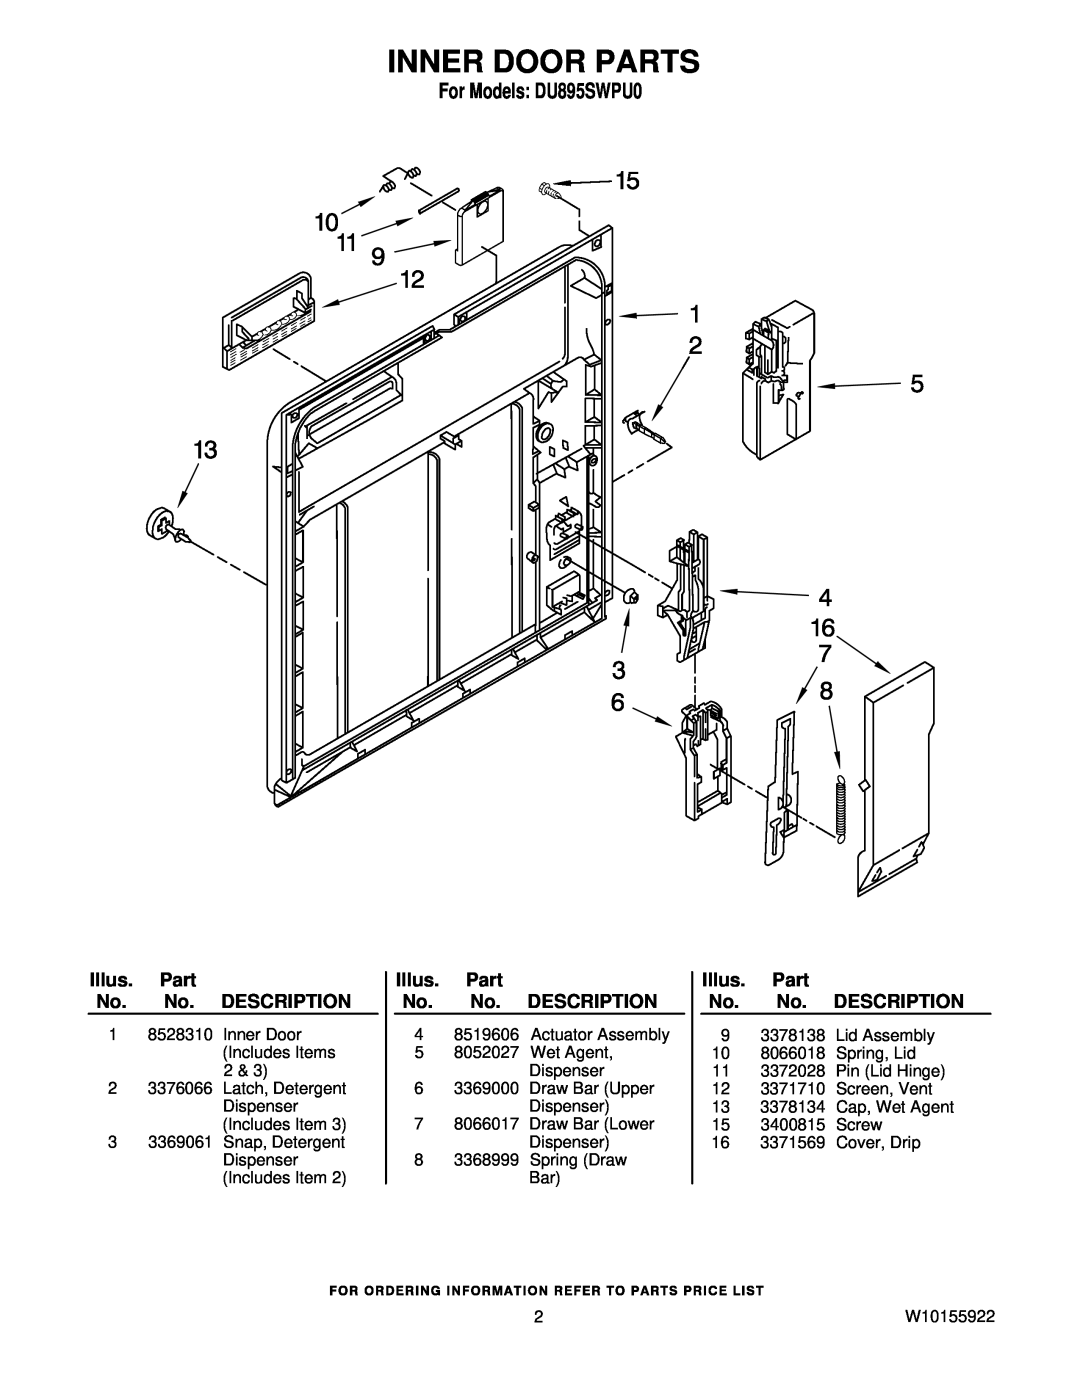 Whirlpool manual Inner Door Parts, For Models DU895SWPU0, Illus. Part No. No. DESCRIPTION 